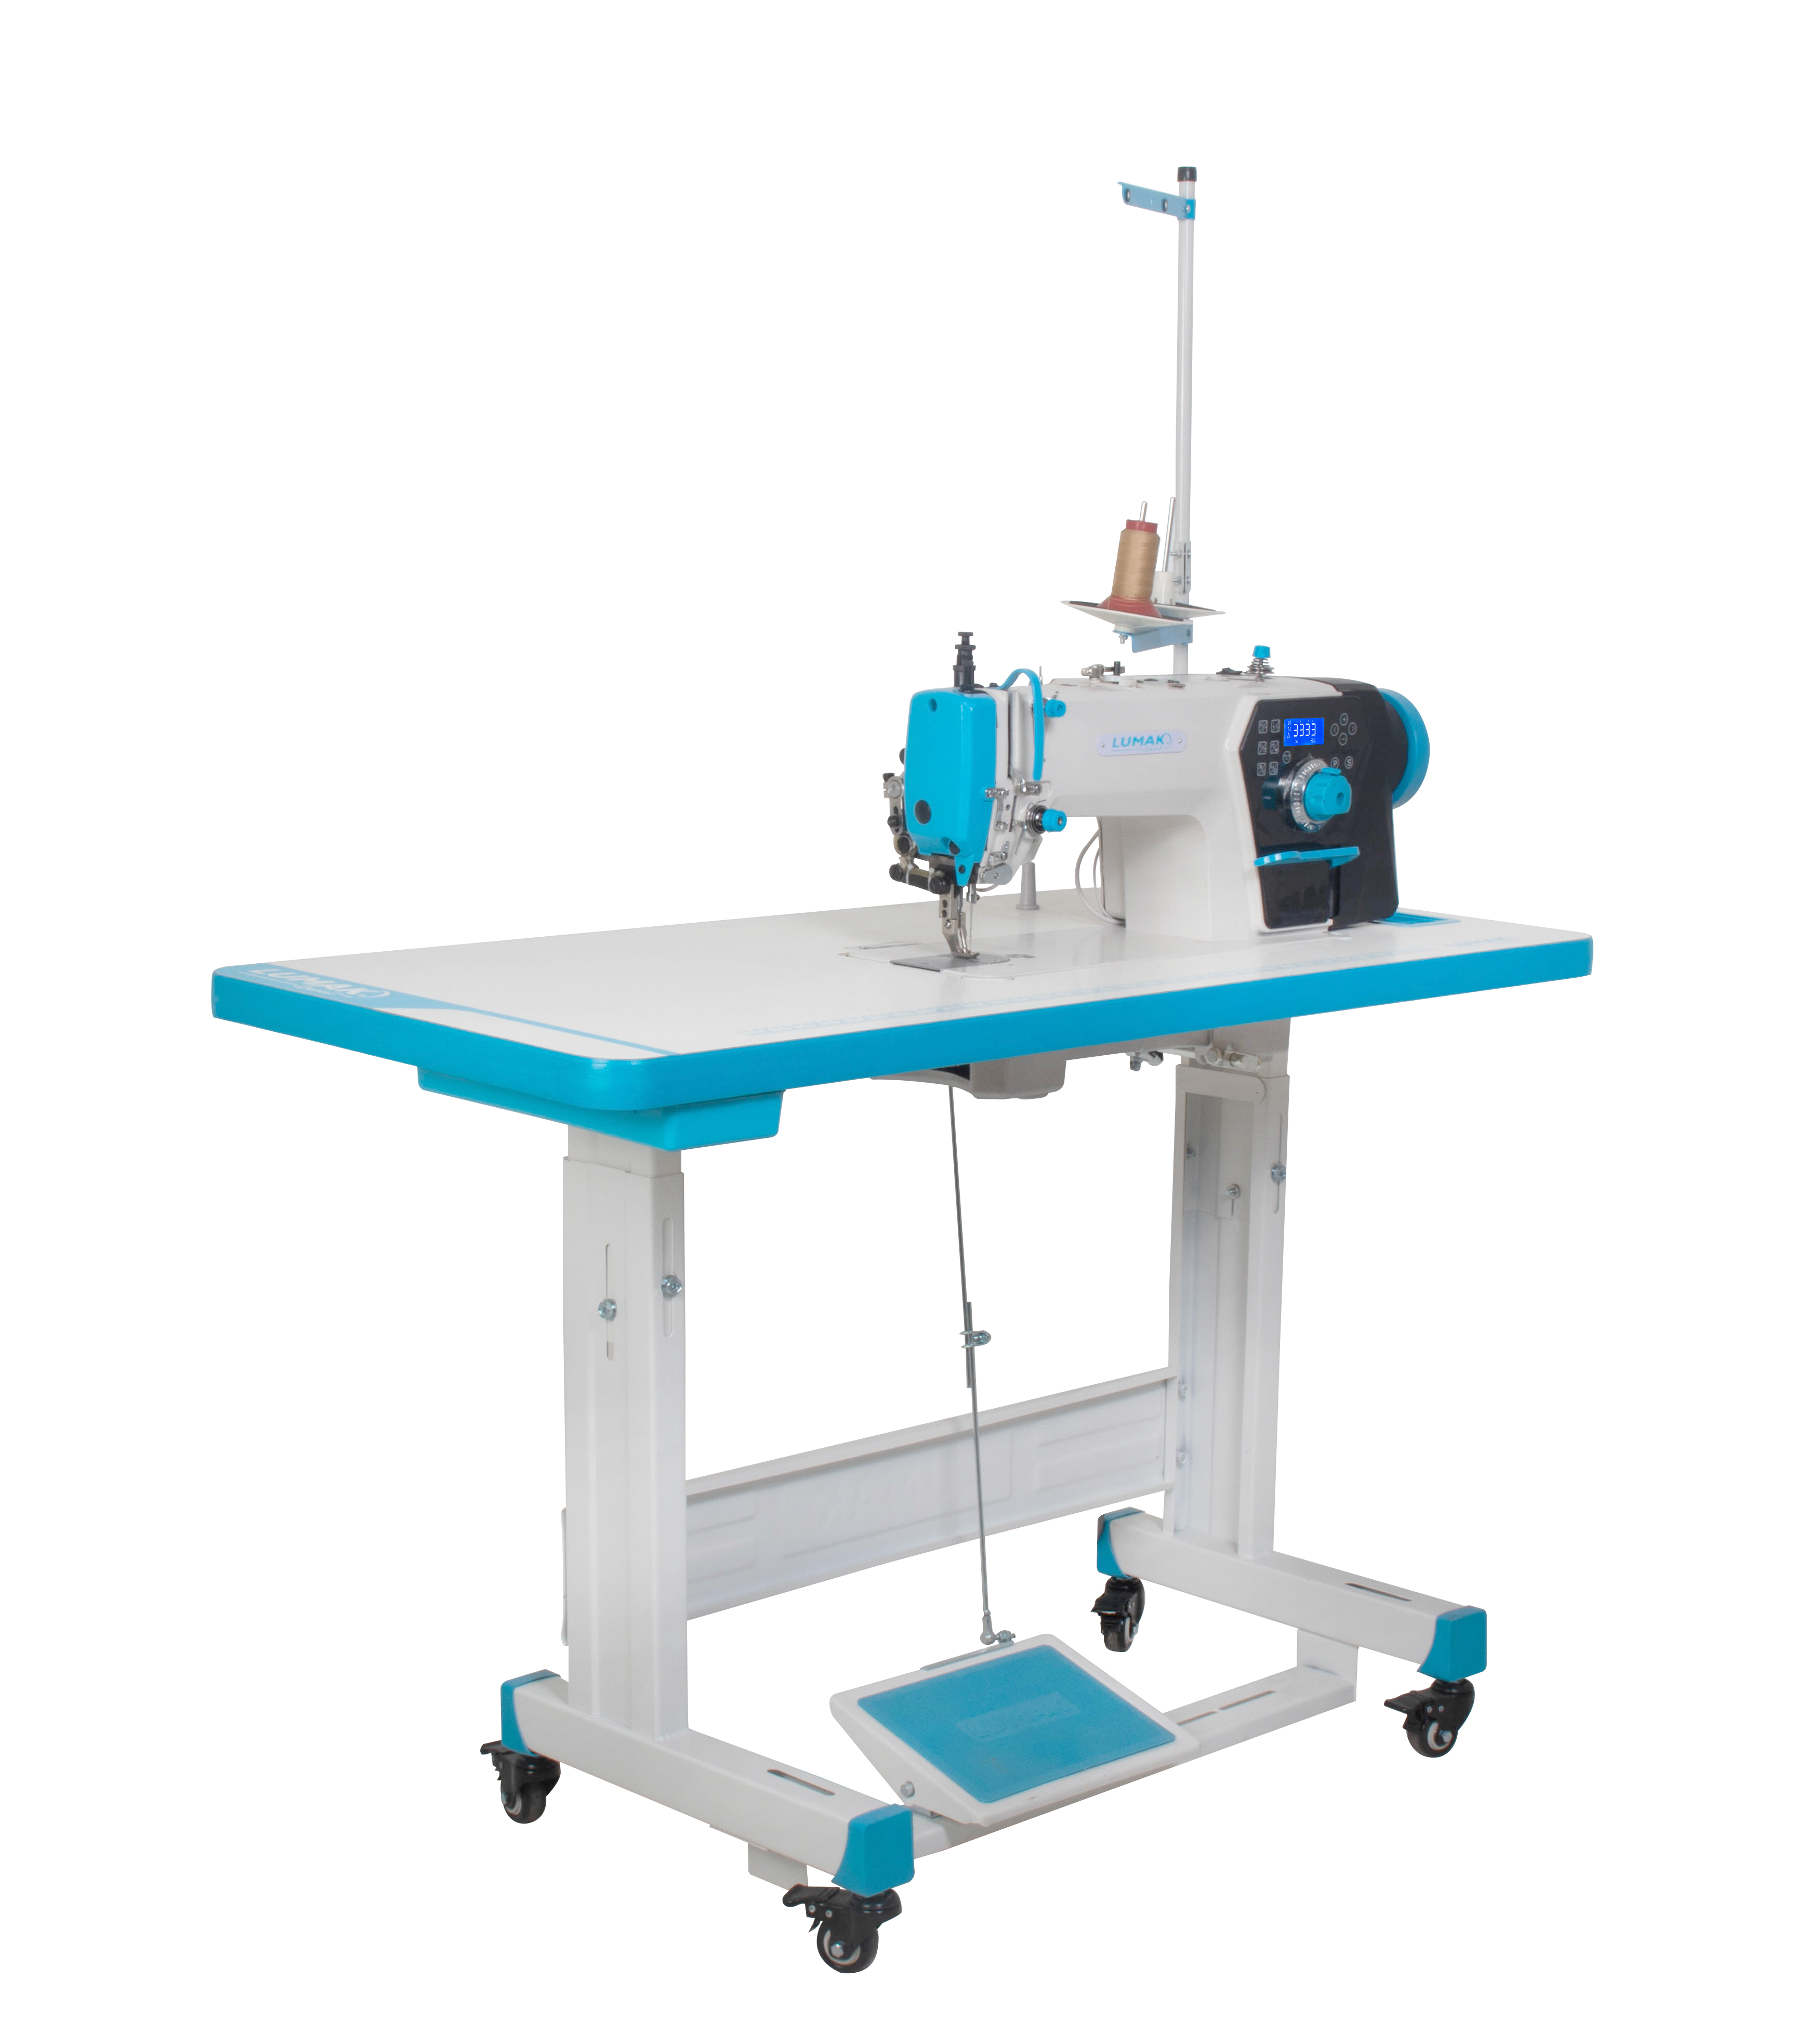 Máquina Costura Industrial Reta Eletrônica 220v LU0358-4D-QI - Lumak